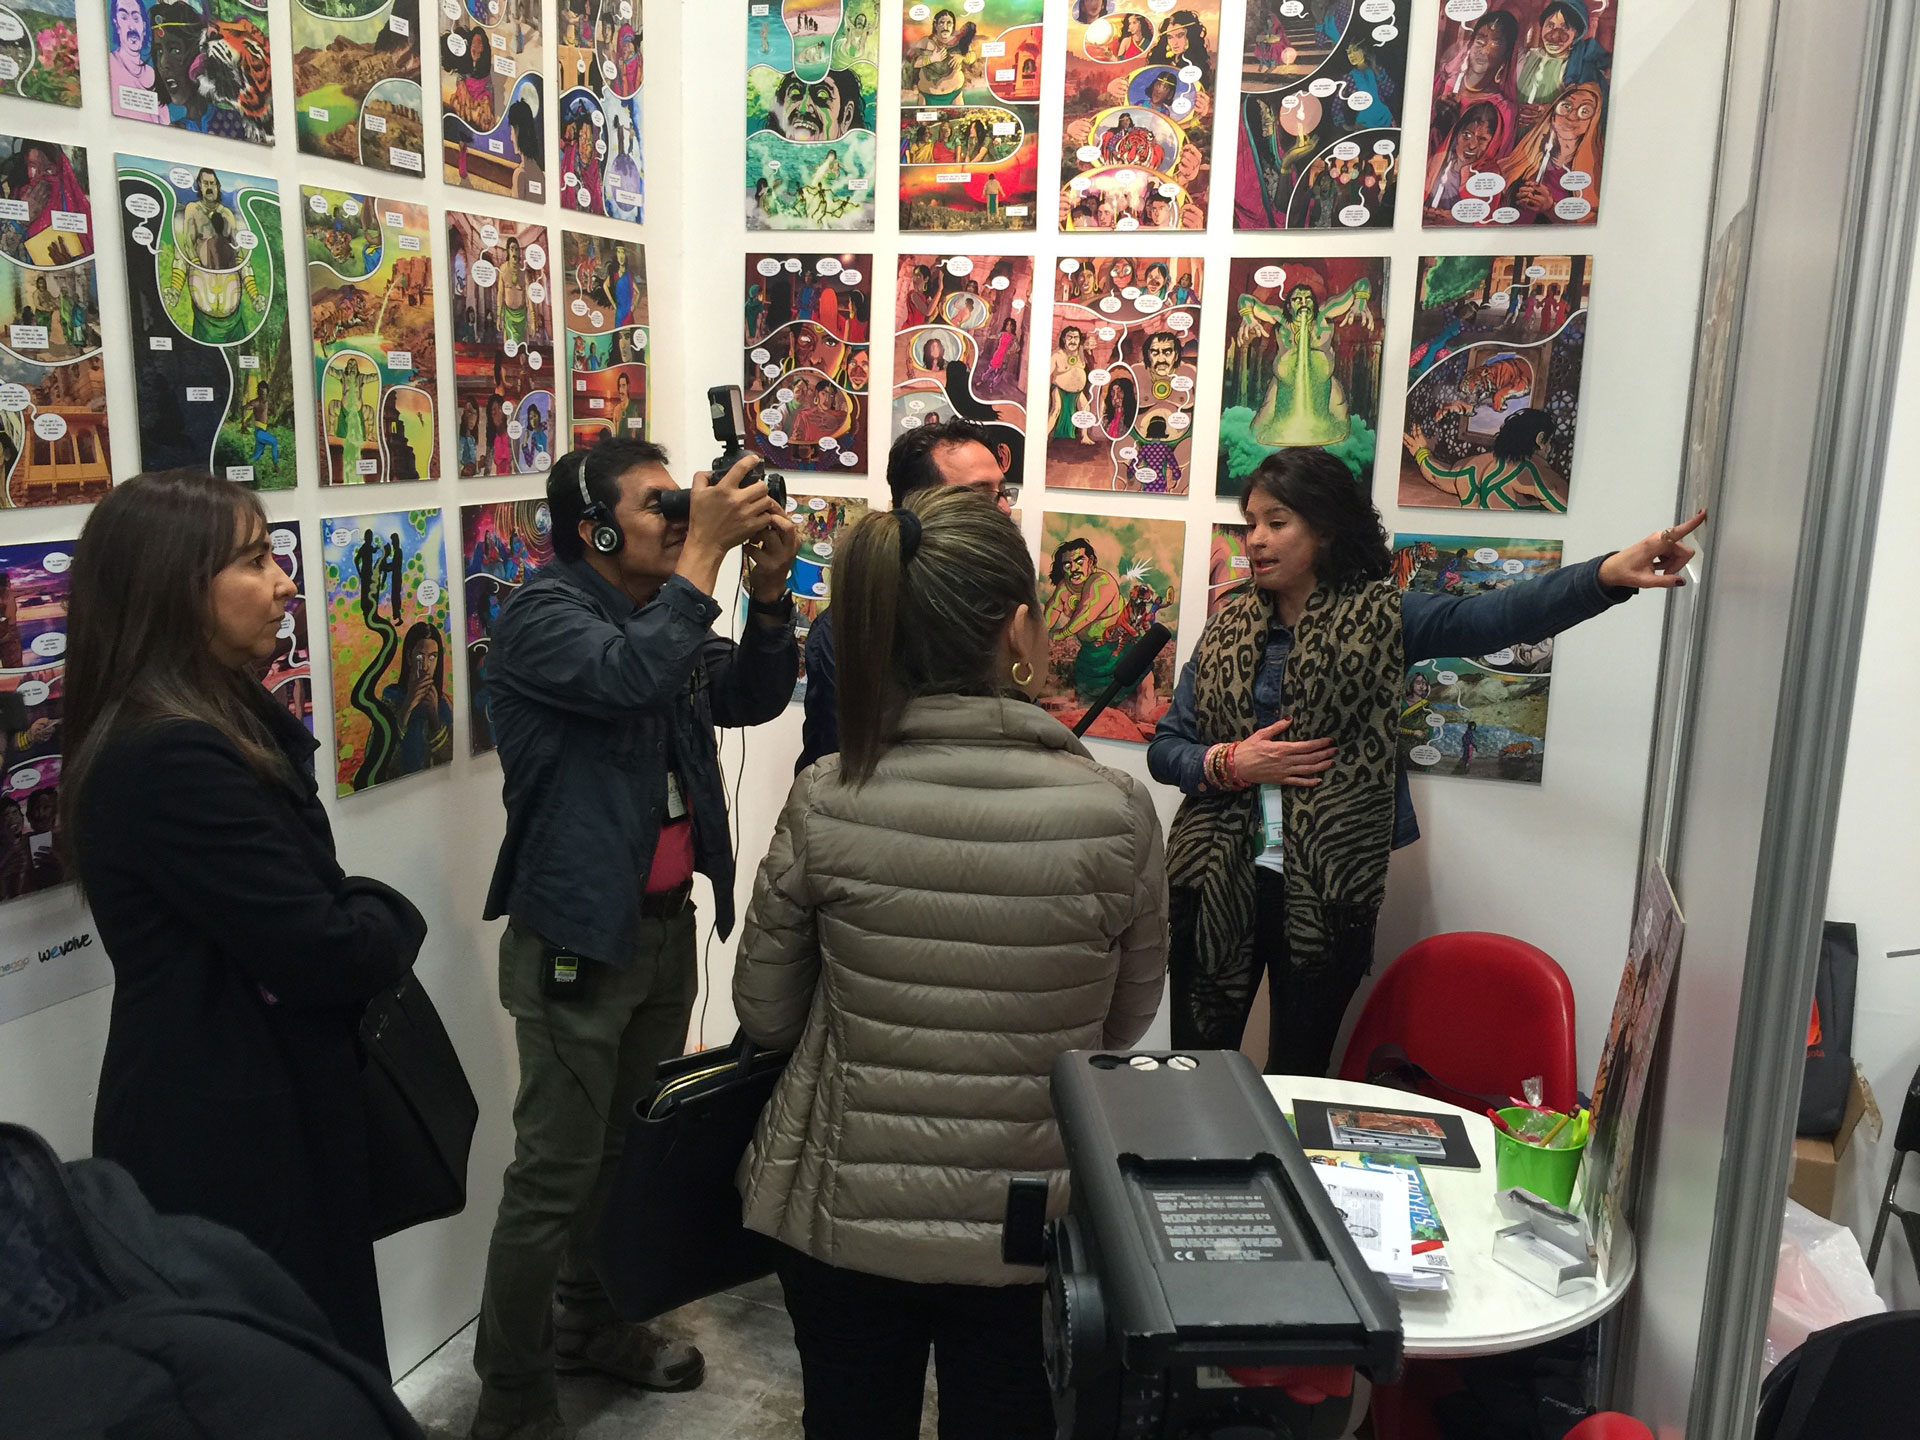 Priya's Mirror Exhibition at ArtBo in Bogota